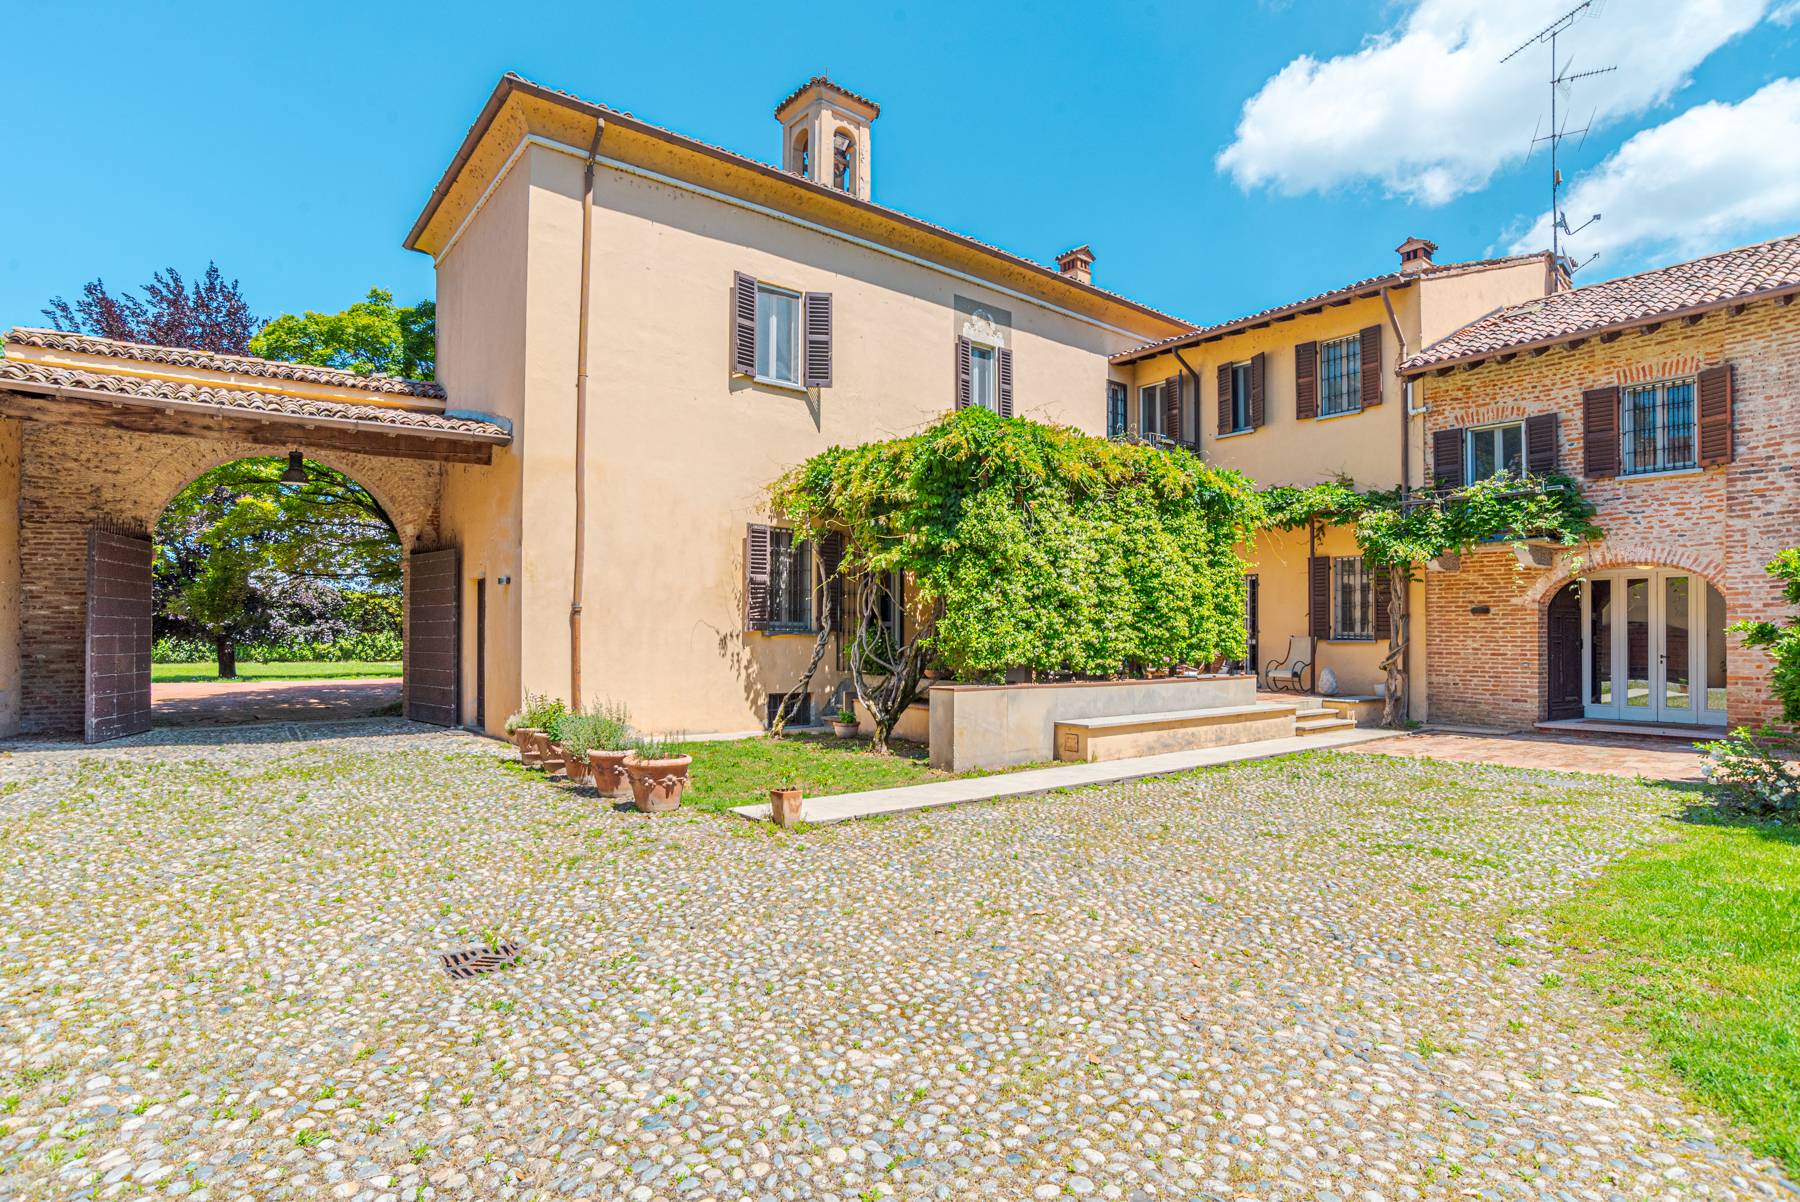 Villa in Vendita a Pavia: 5 locali, 1919 mq - Foto 1